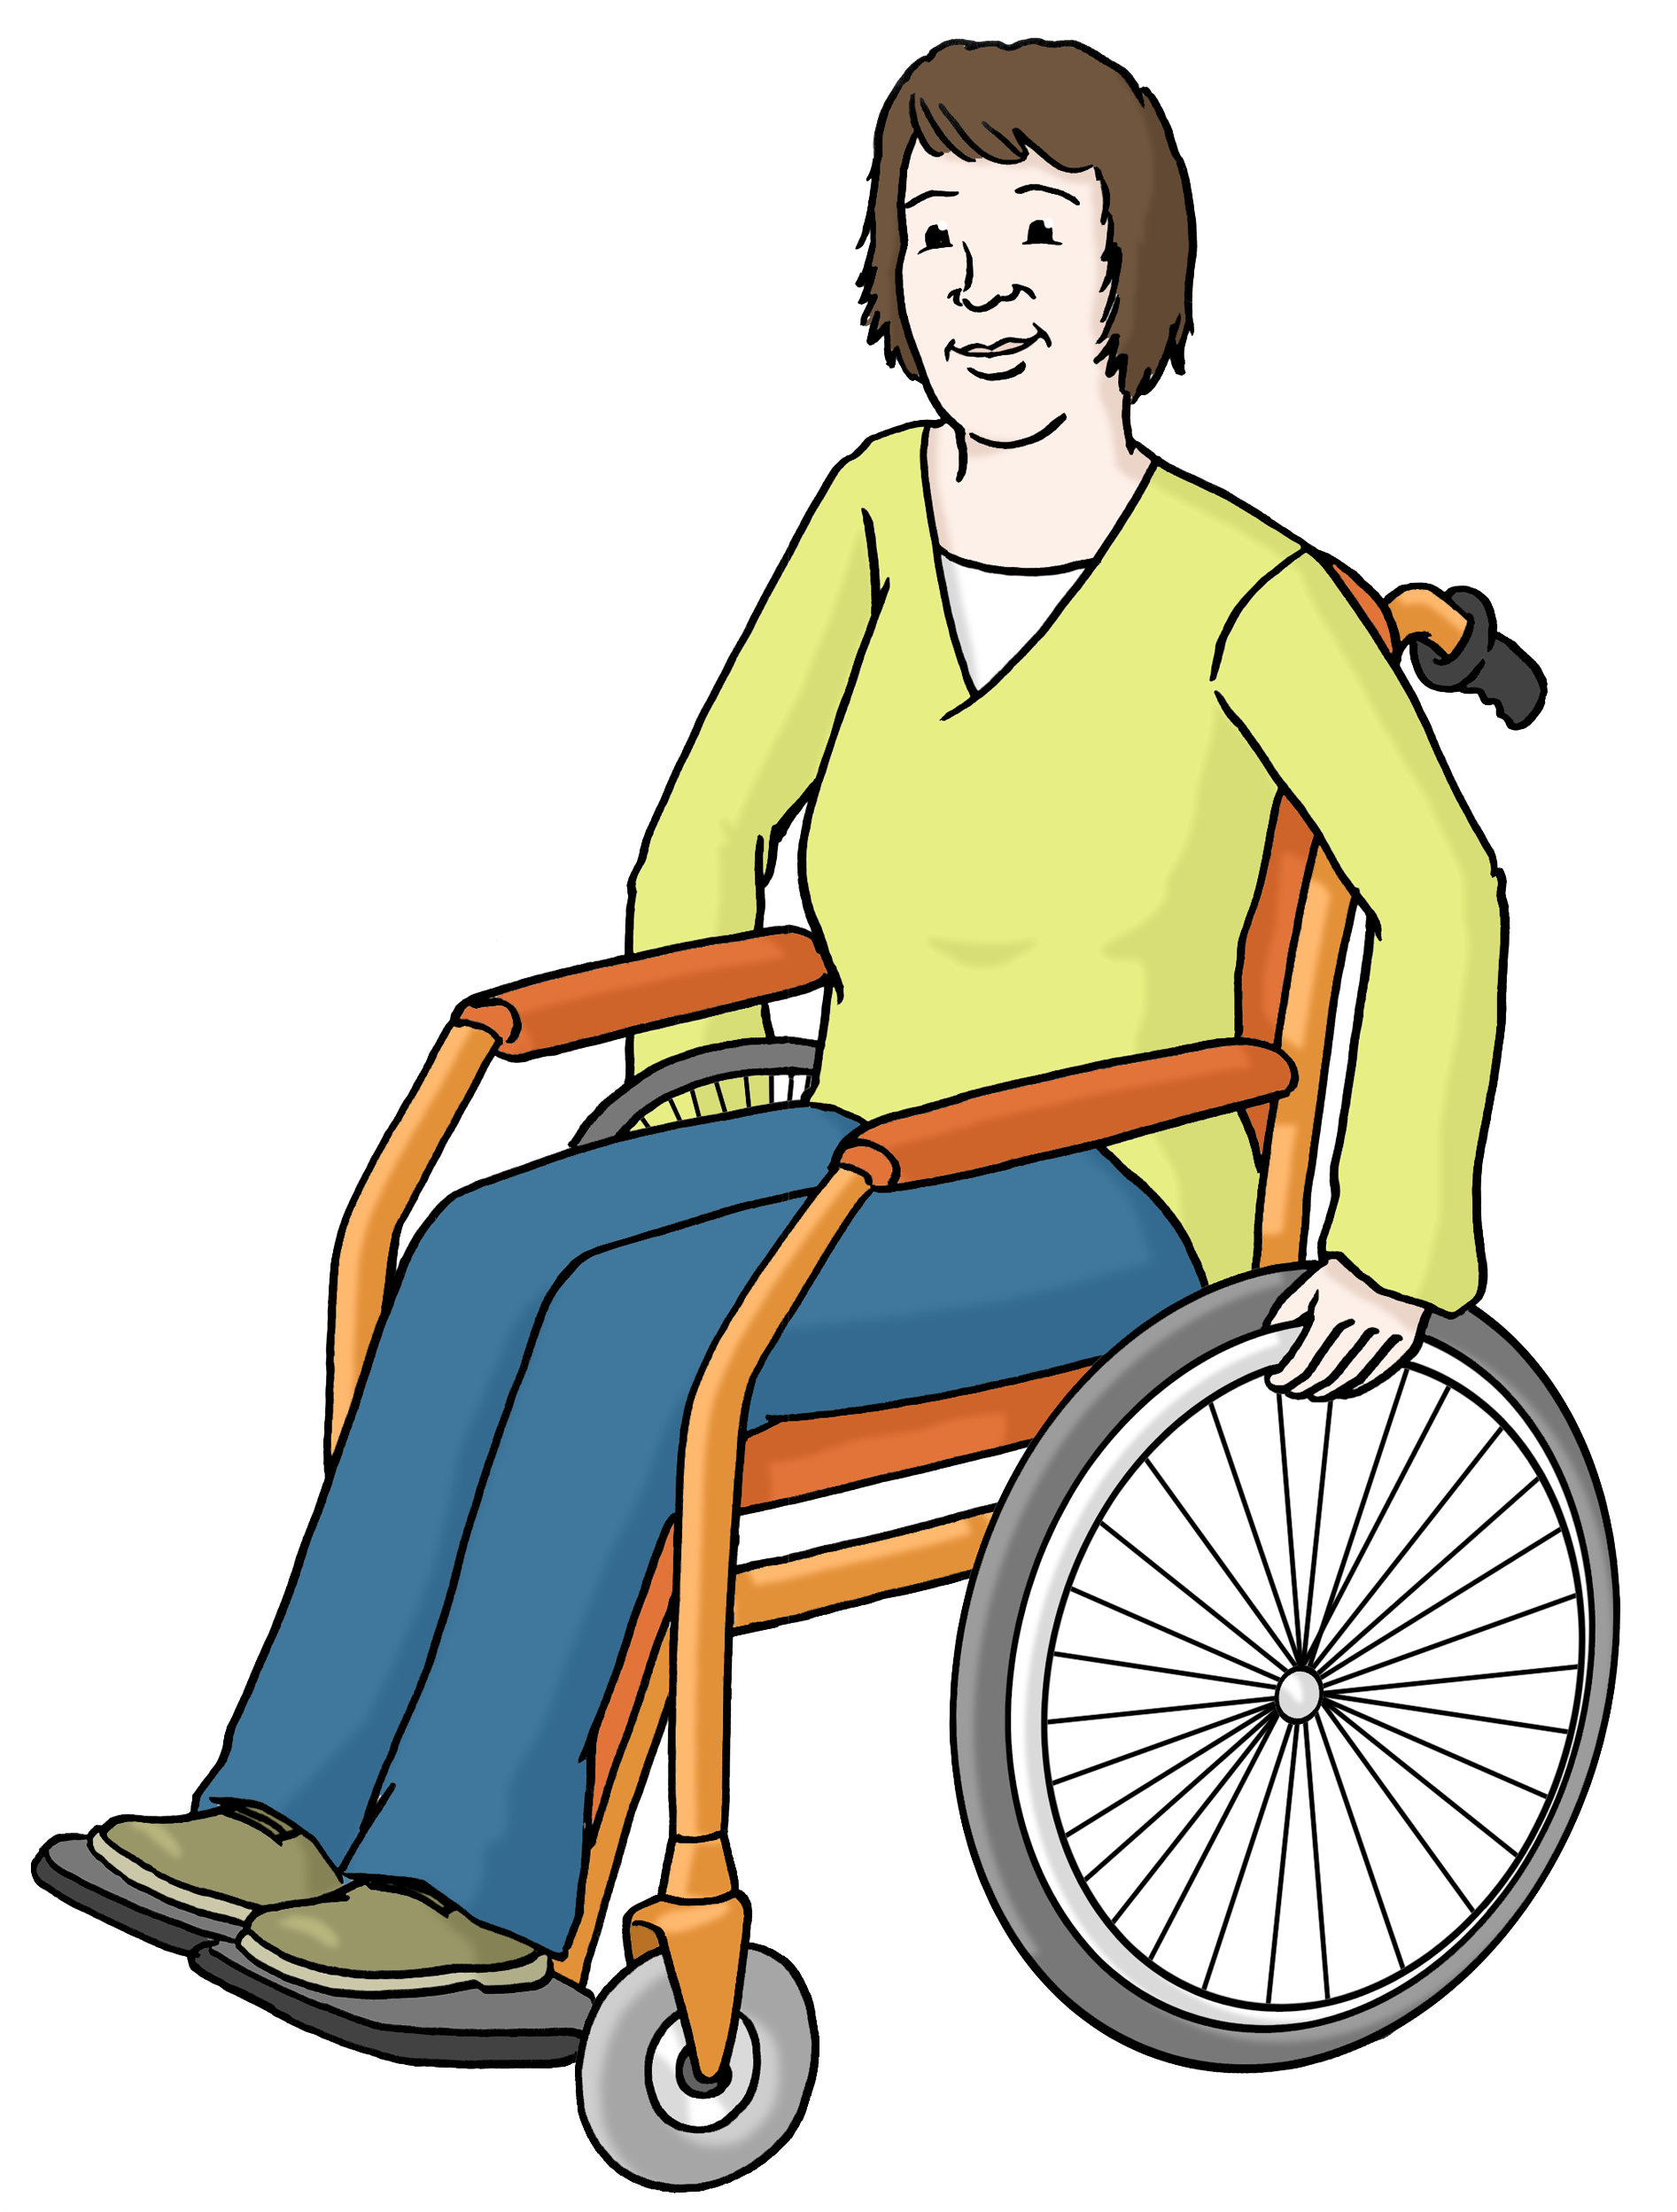 Mensch im Rollstuhl